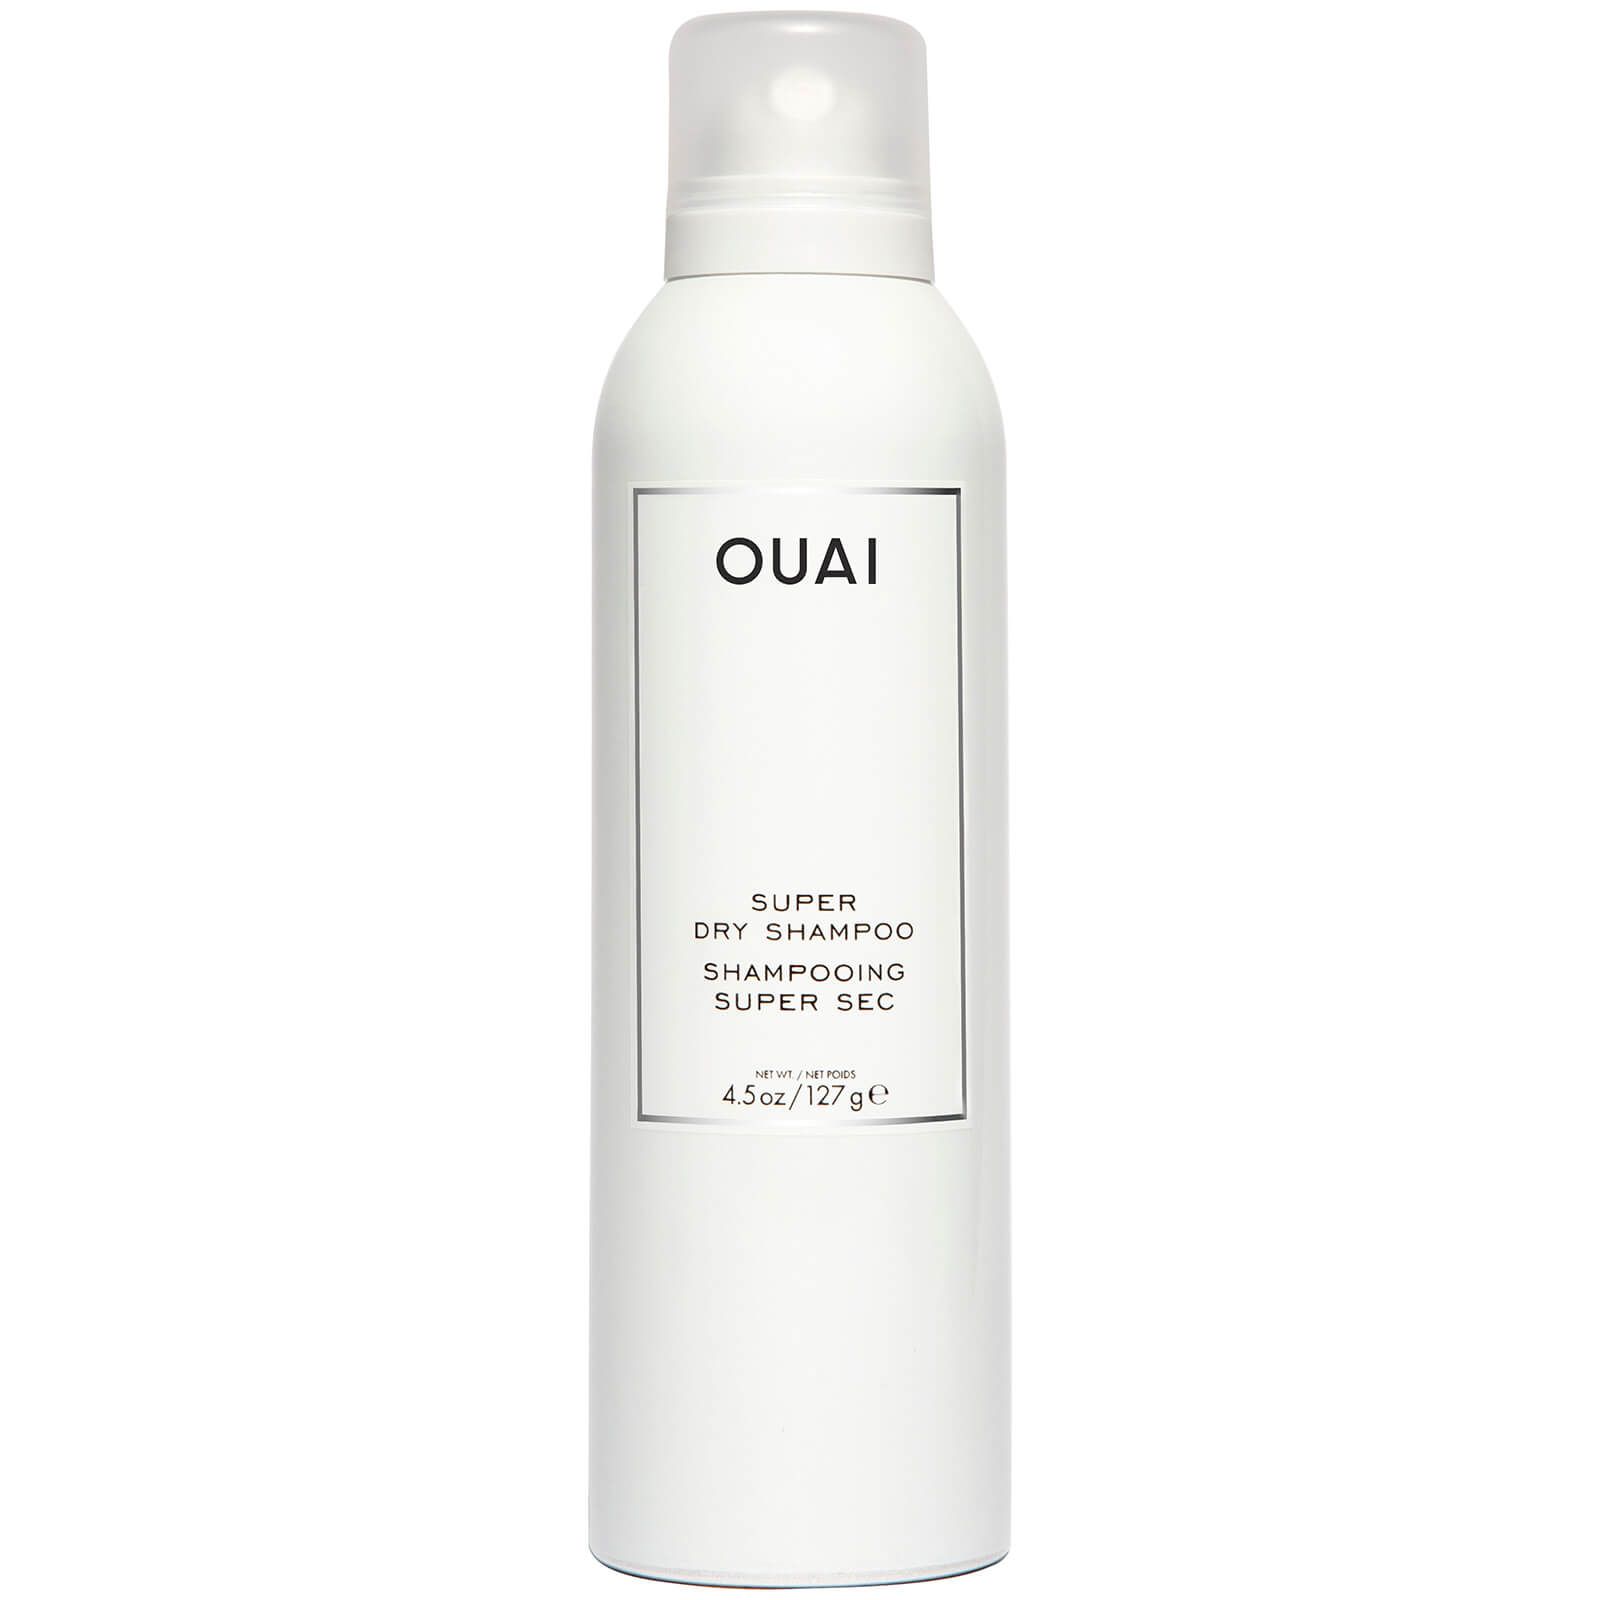 OUAI Super Dry Shampoo 127g | Cult Beauty (Global)